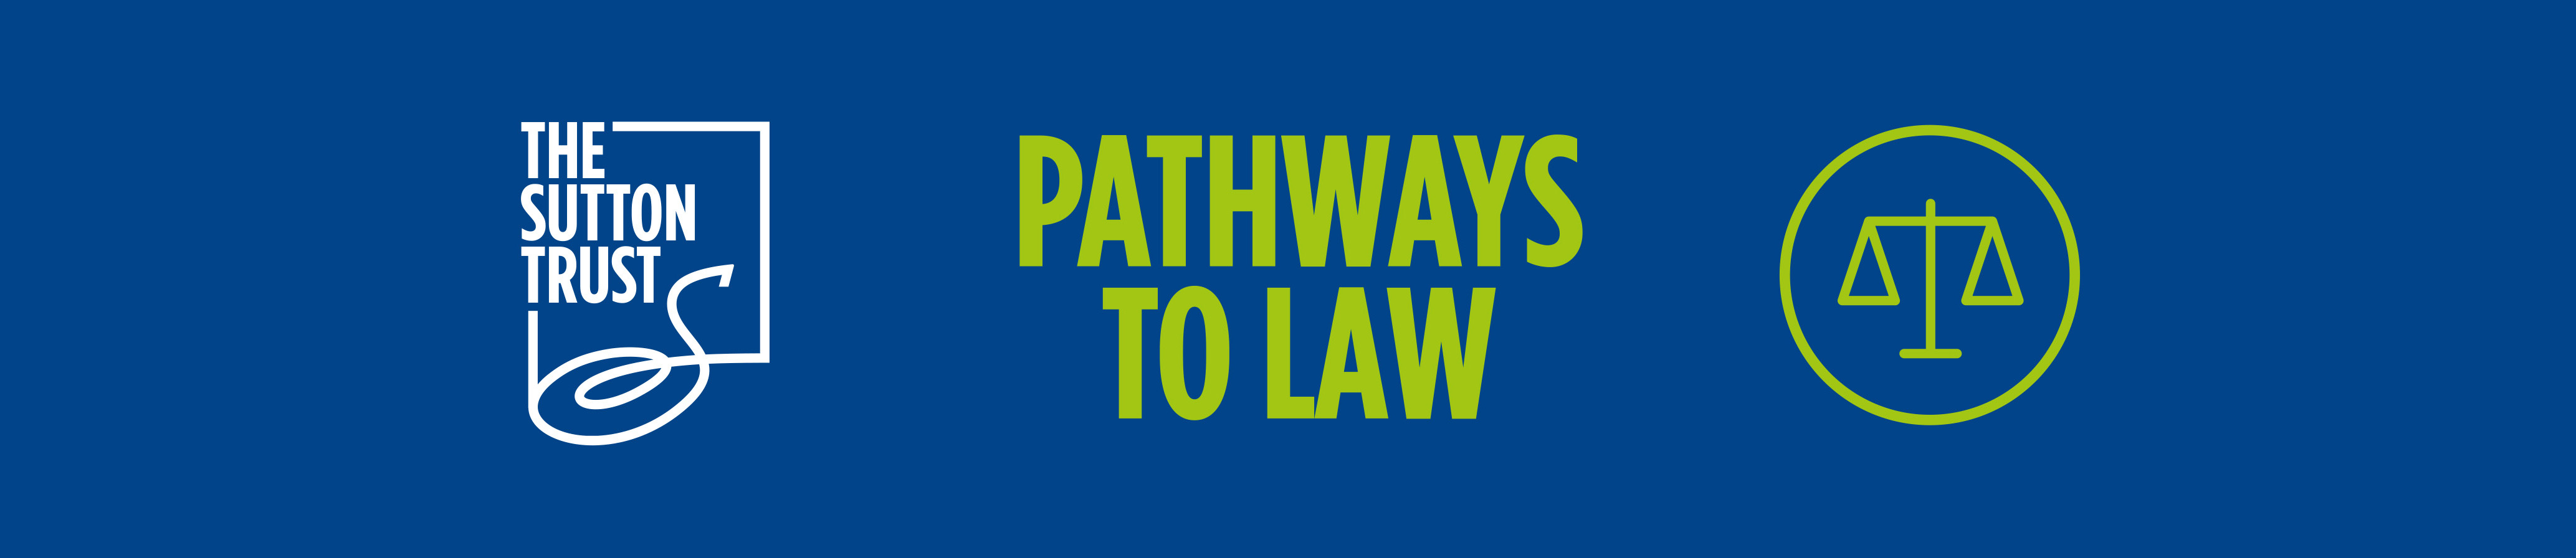 Pathways to Law, Sutton Trust Logo